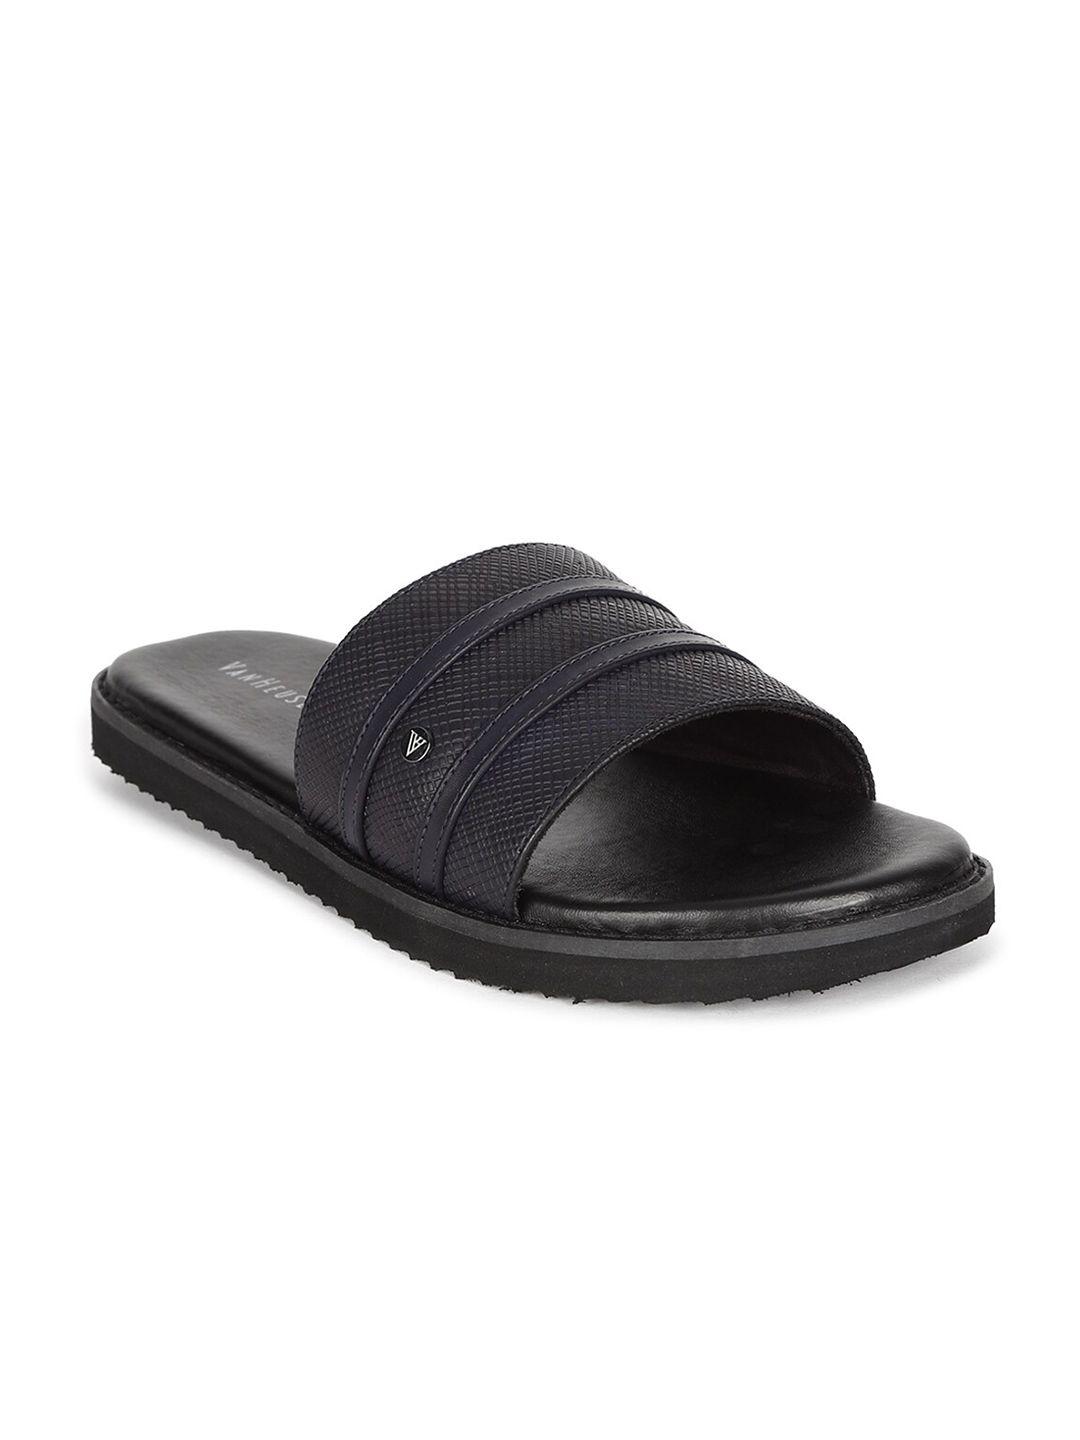 van-heusen-men-black-leather-comfort-sandals